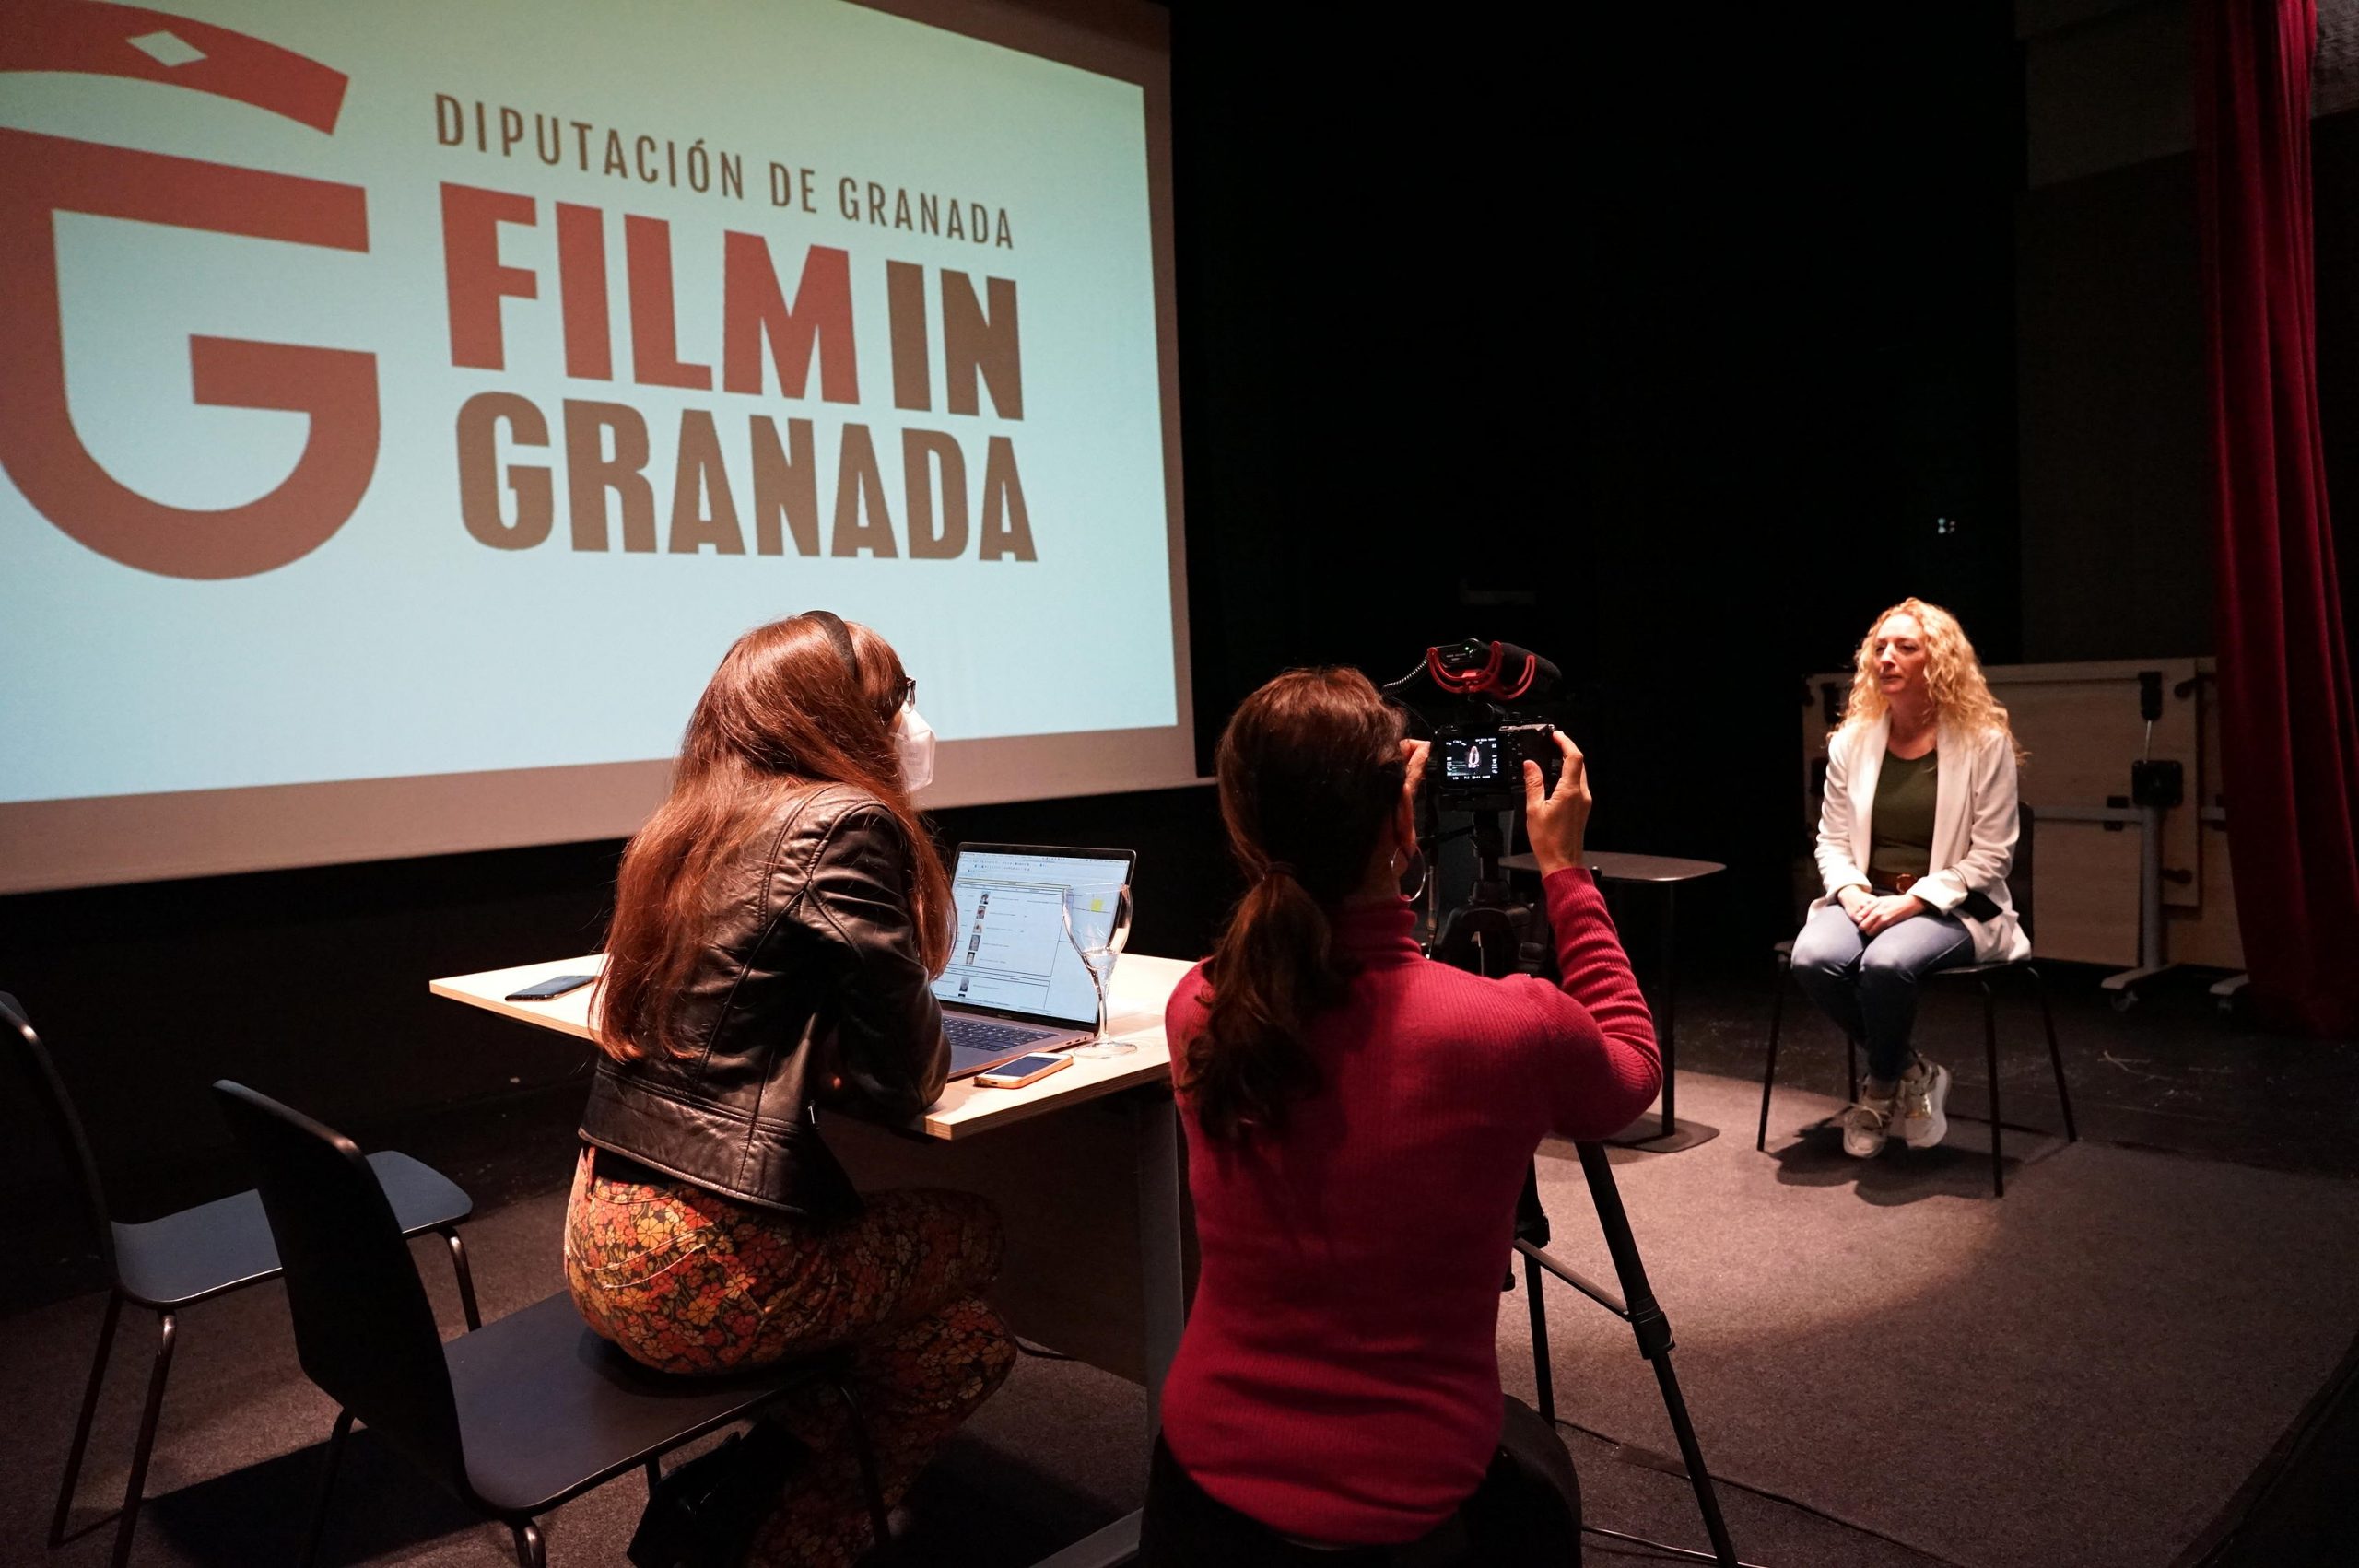 Film in Granada trabaja en tres películas y una serie que empiezan a rodarse en mayo